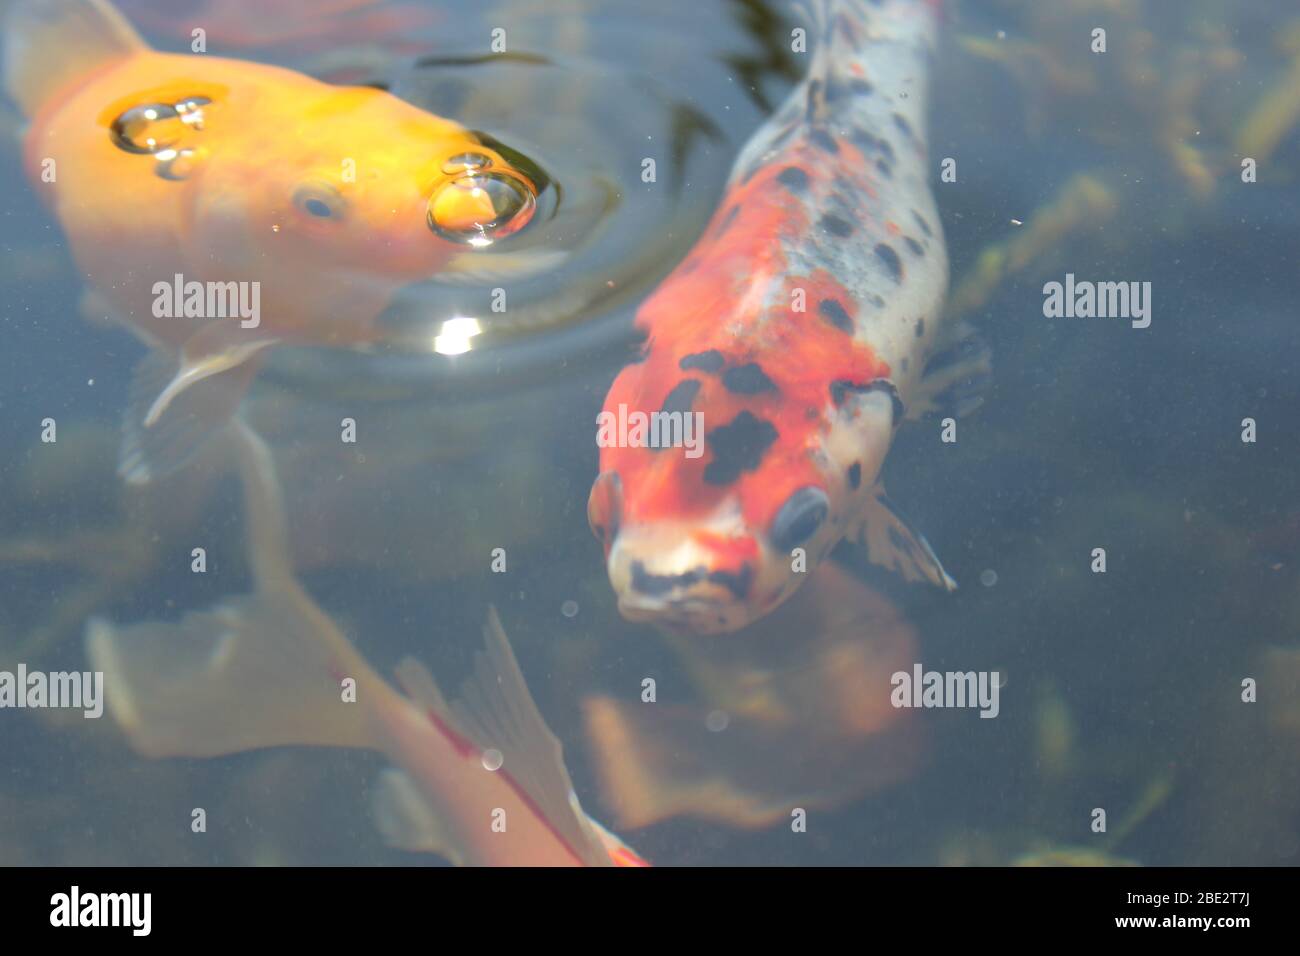 One goldfish and one shubunkin close up Stock Photo